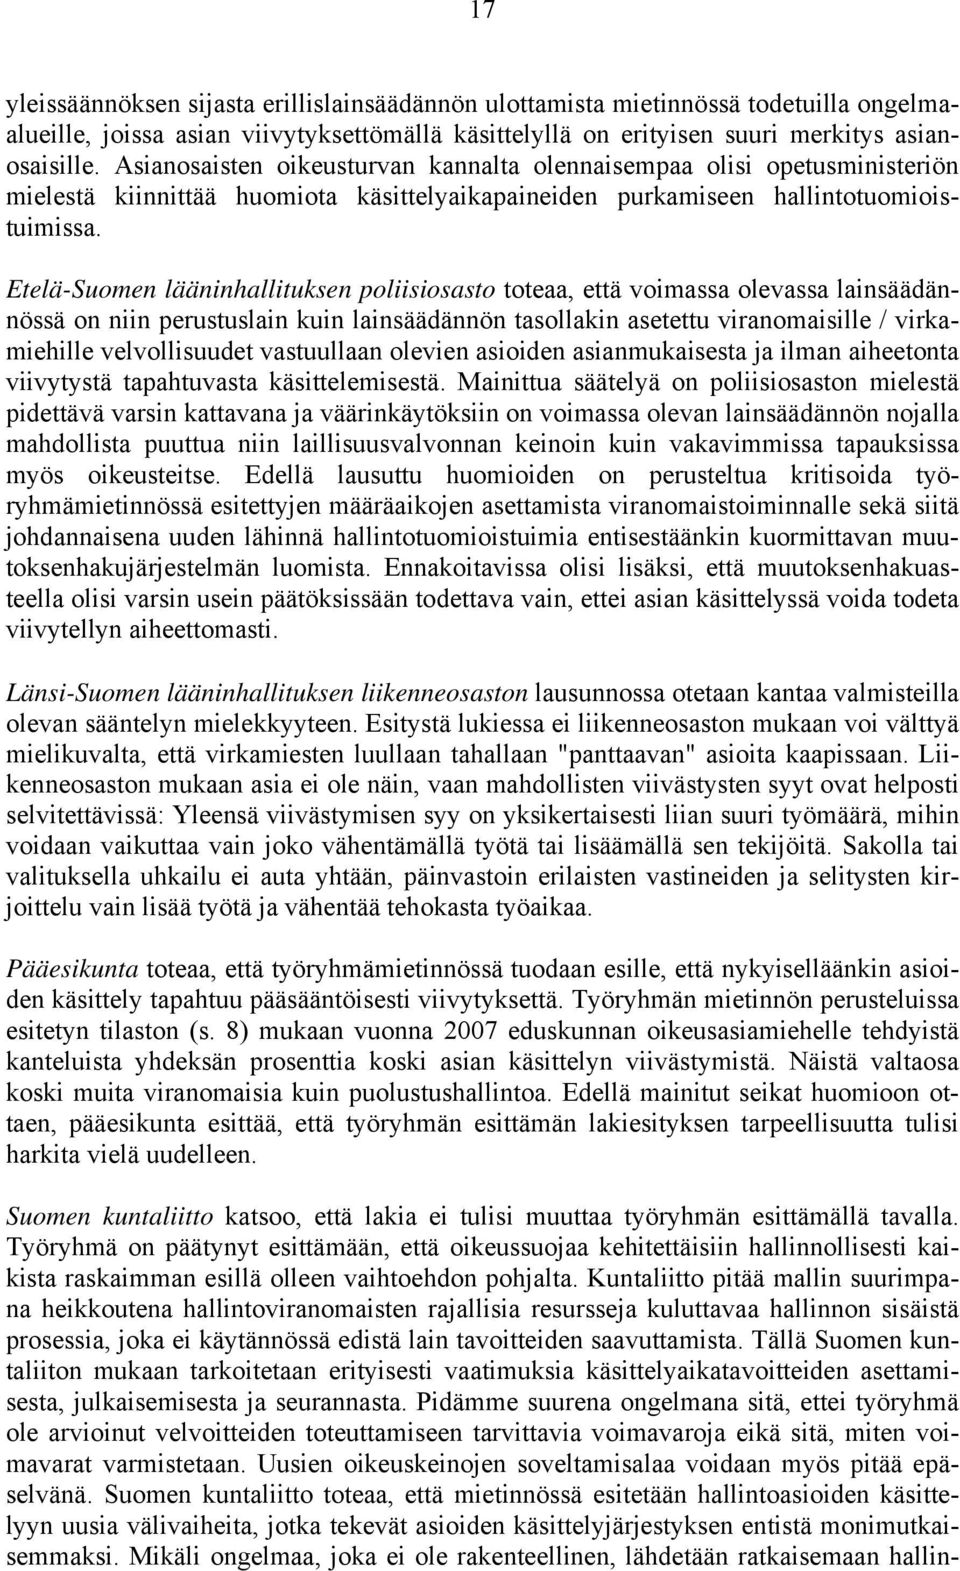 Etelä-Suomen lääninhallituksen poliisiosasto toteaa, että voimassa olevassa lainsäädännössä on niin perustuslain kuin lainsäädännön tasollakin asetettu viranomaisille / virkamiehille velvollisuudet